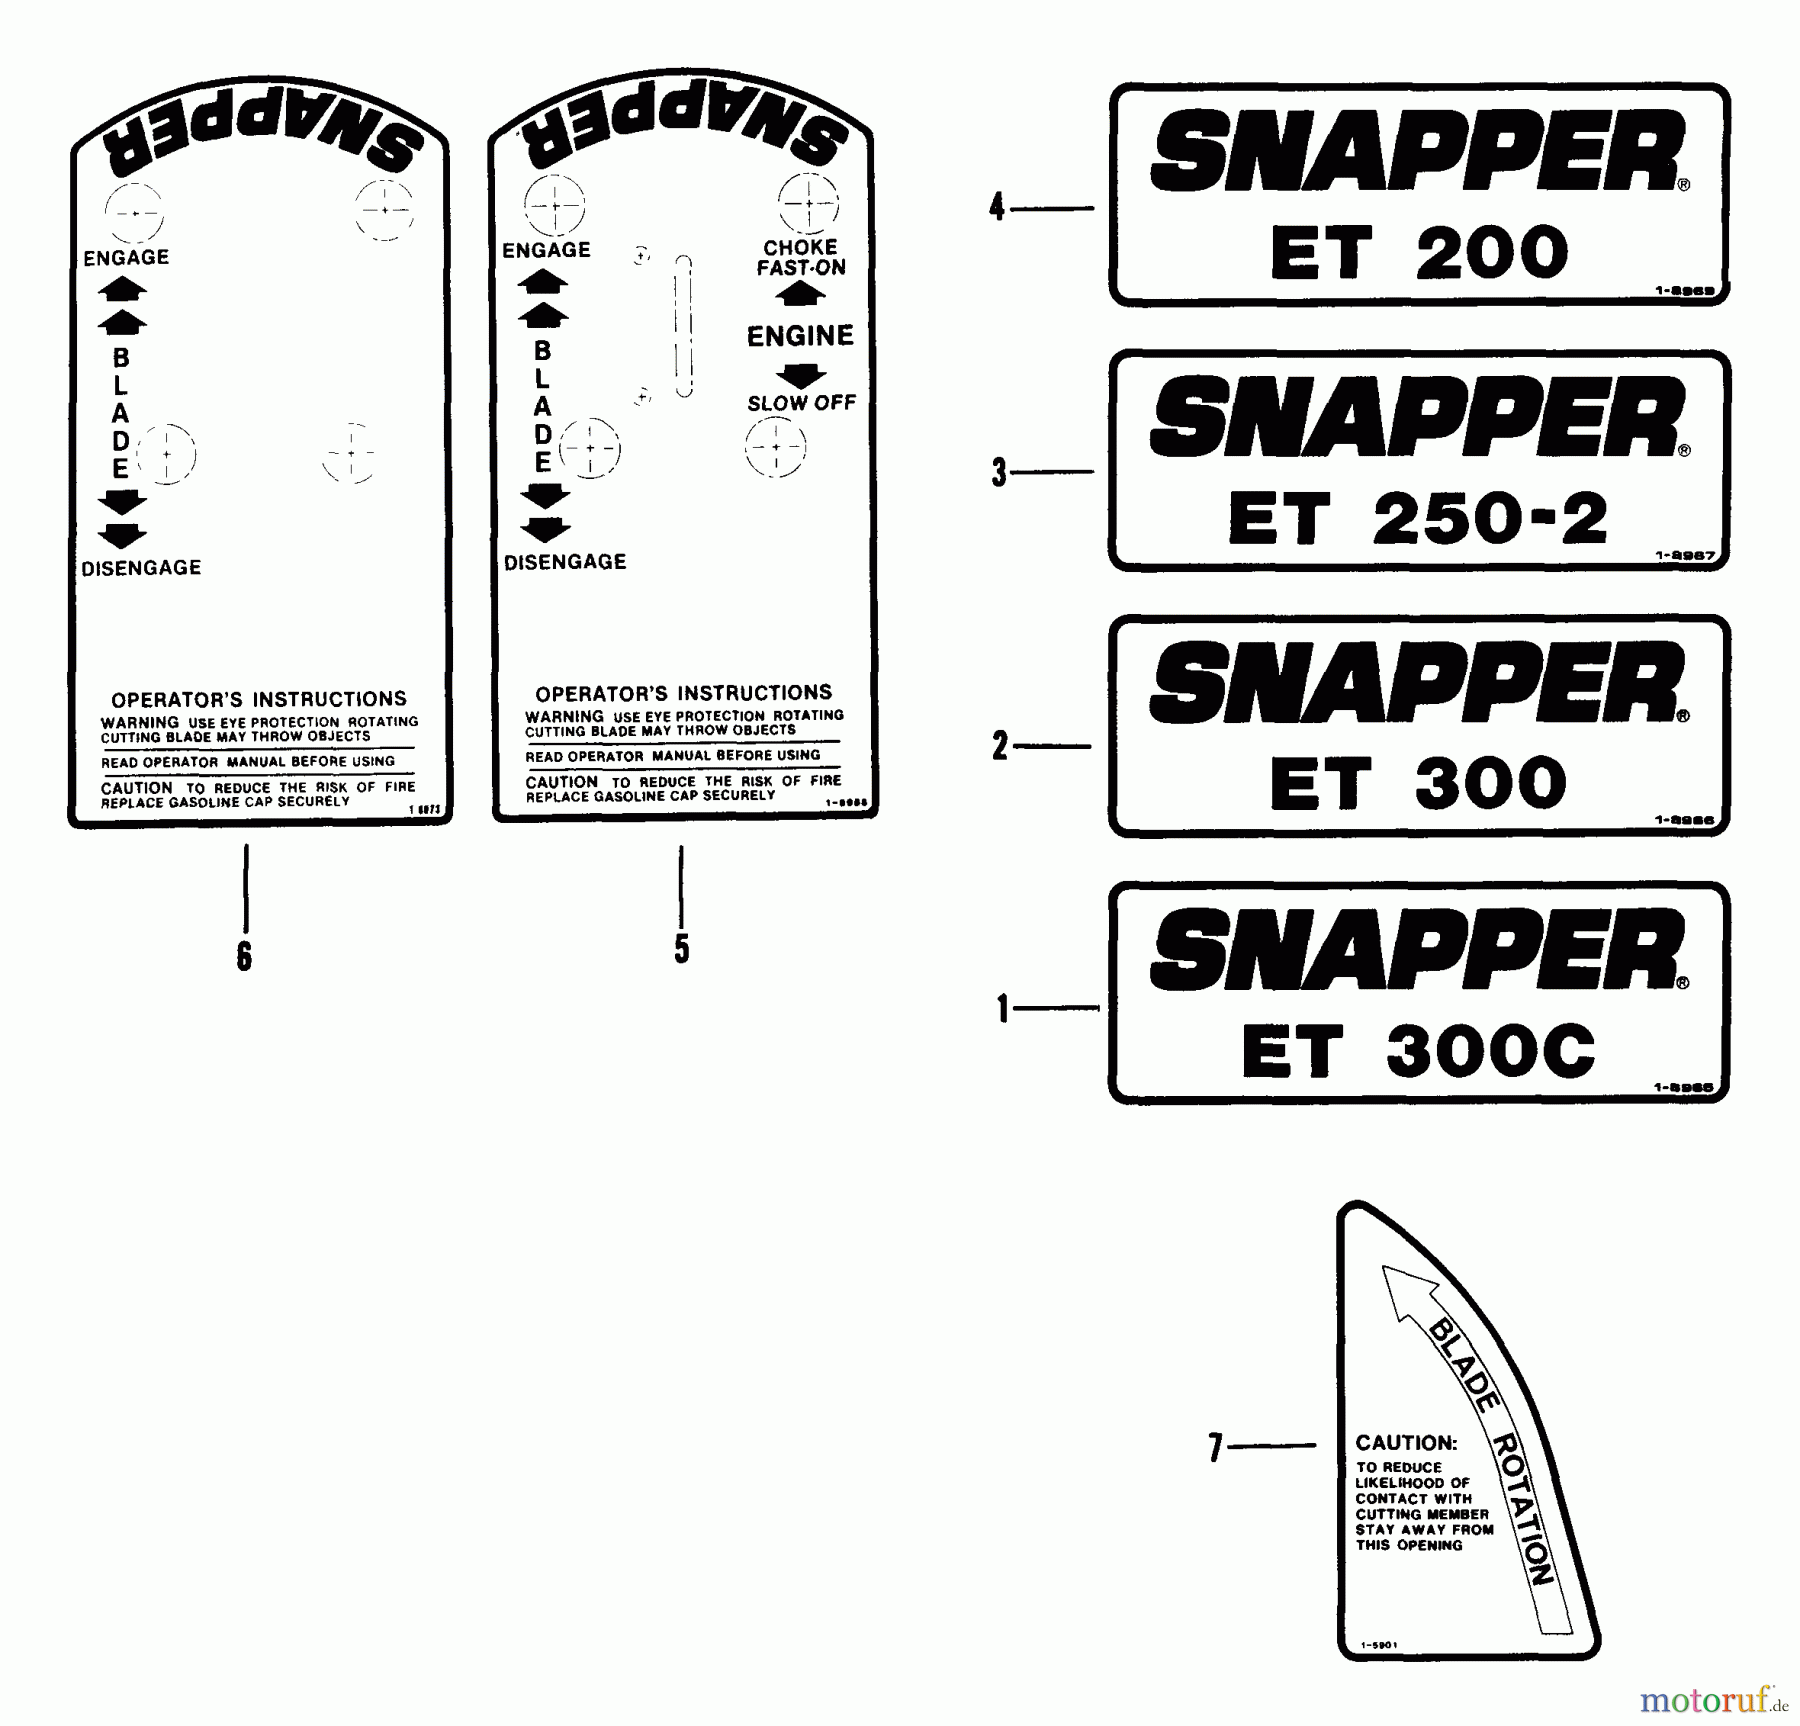  Snapper Kantenschneider ET201B - Snapper Edger Trimmer, 3 HP, Series 1 Decals